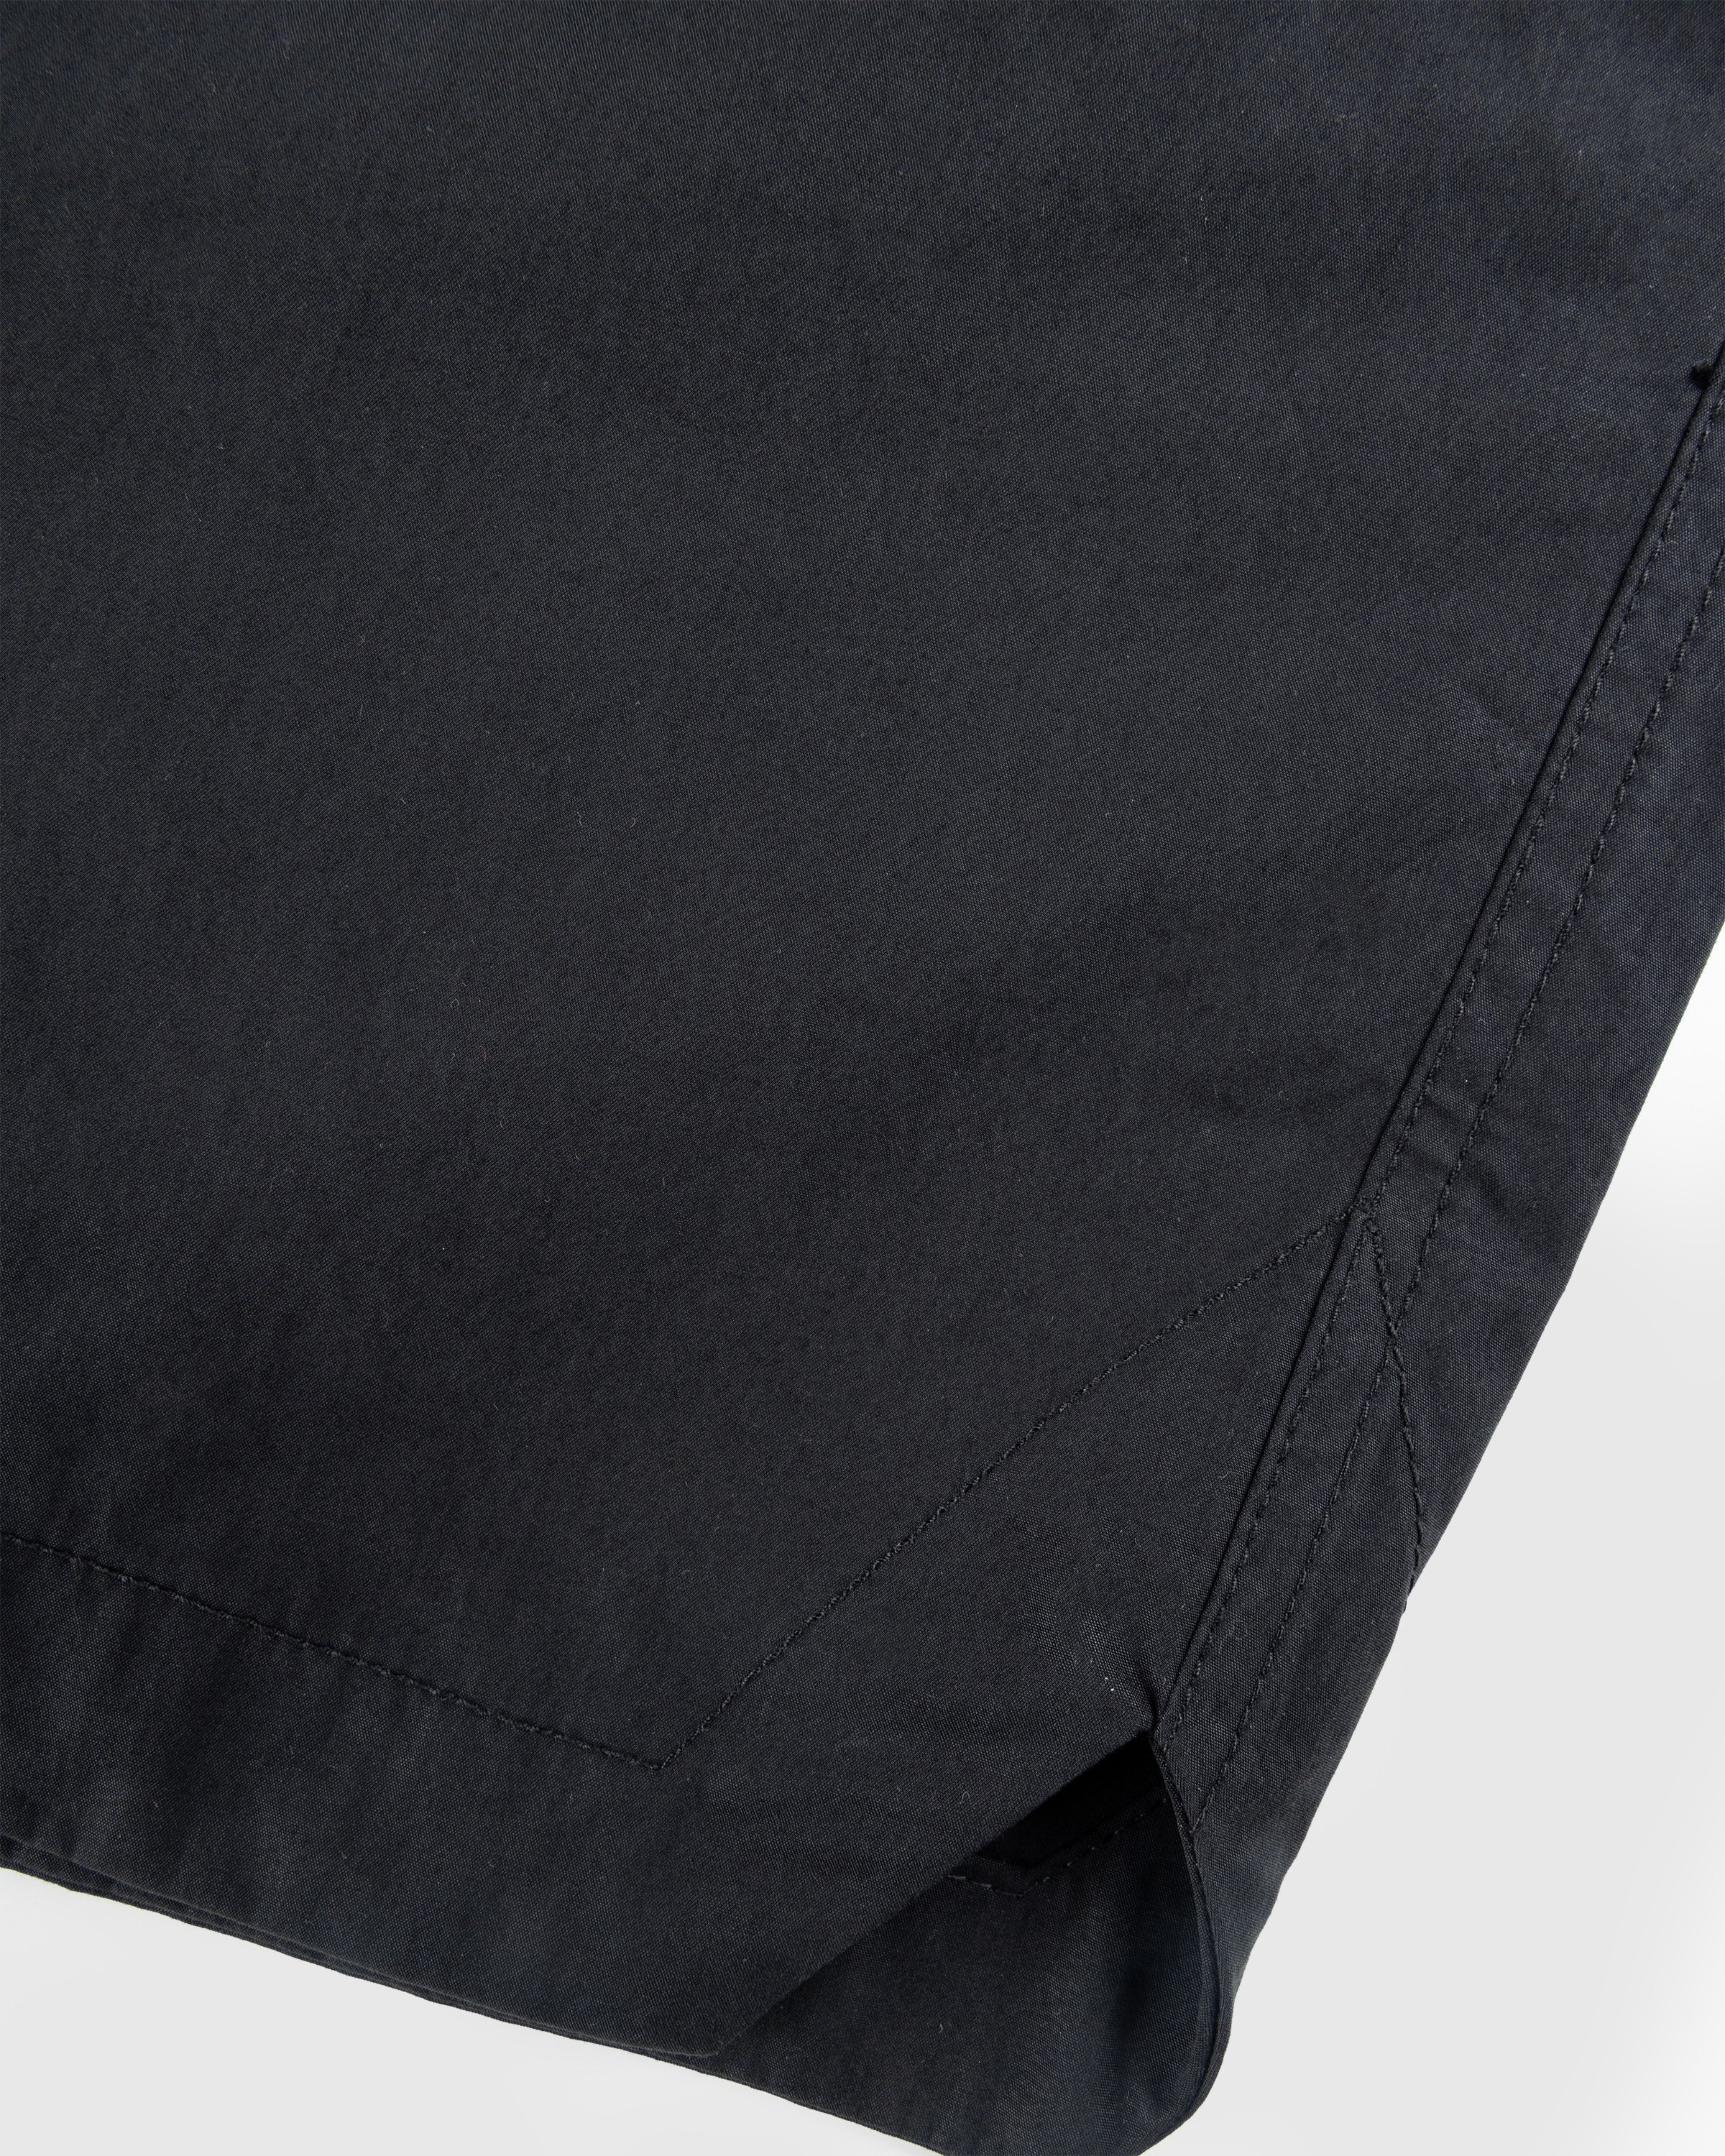 Highsnobiety HS05 - Weather Cloth Nylon Shorts Black - Clothing - Black - Image 8